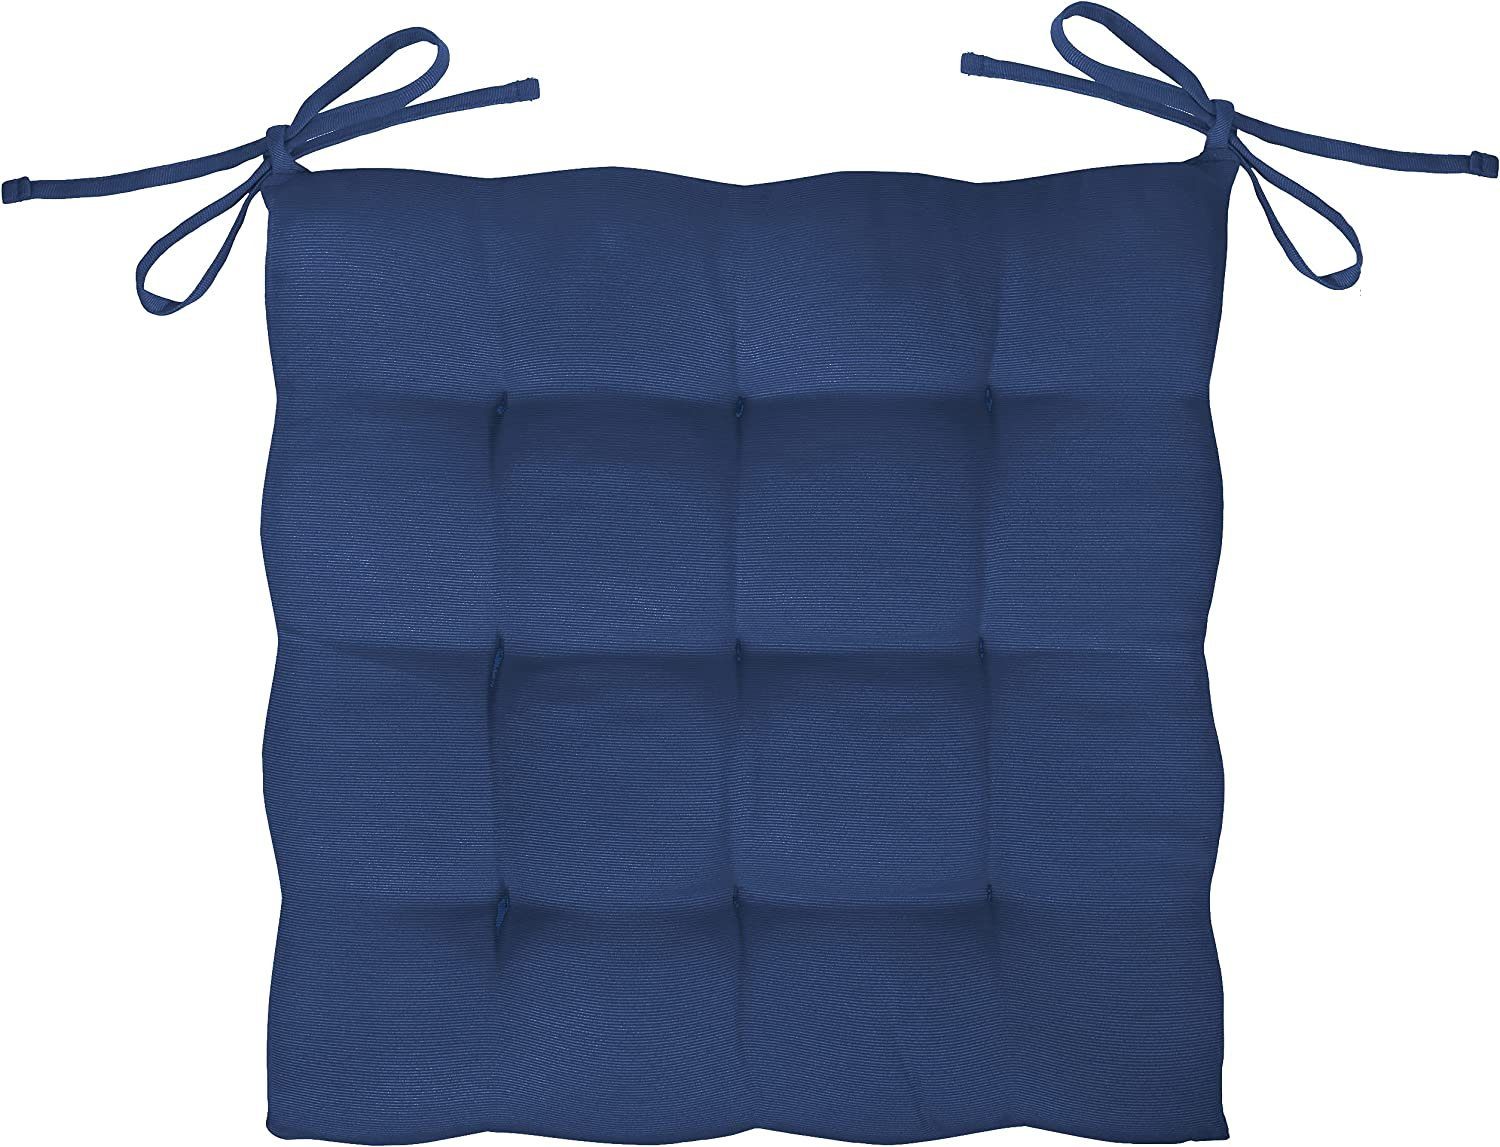 GREEN MARK Sitzkissen Außen Navy weich Stuhlkissen Textilien oder gefüllt, für blau 40x40cm Sitzkissen, Innen